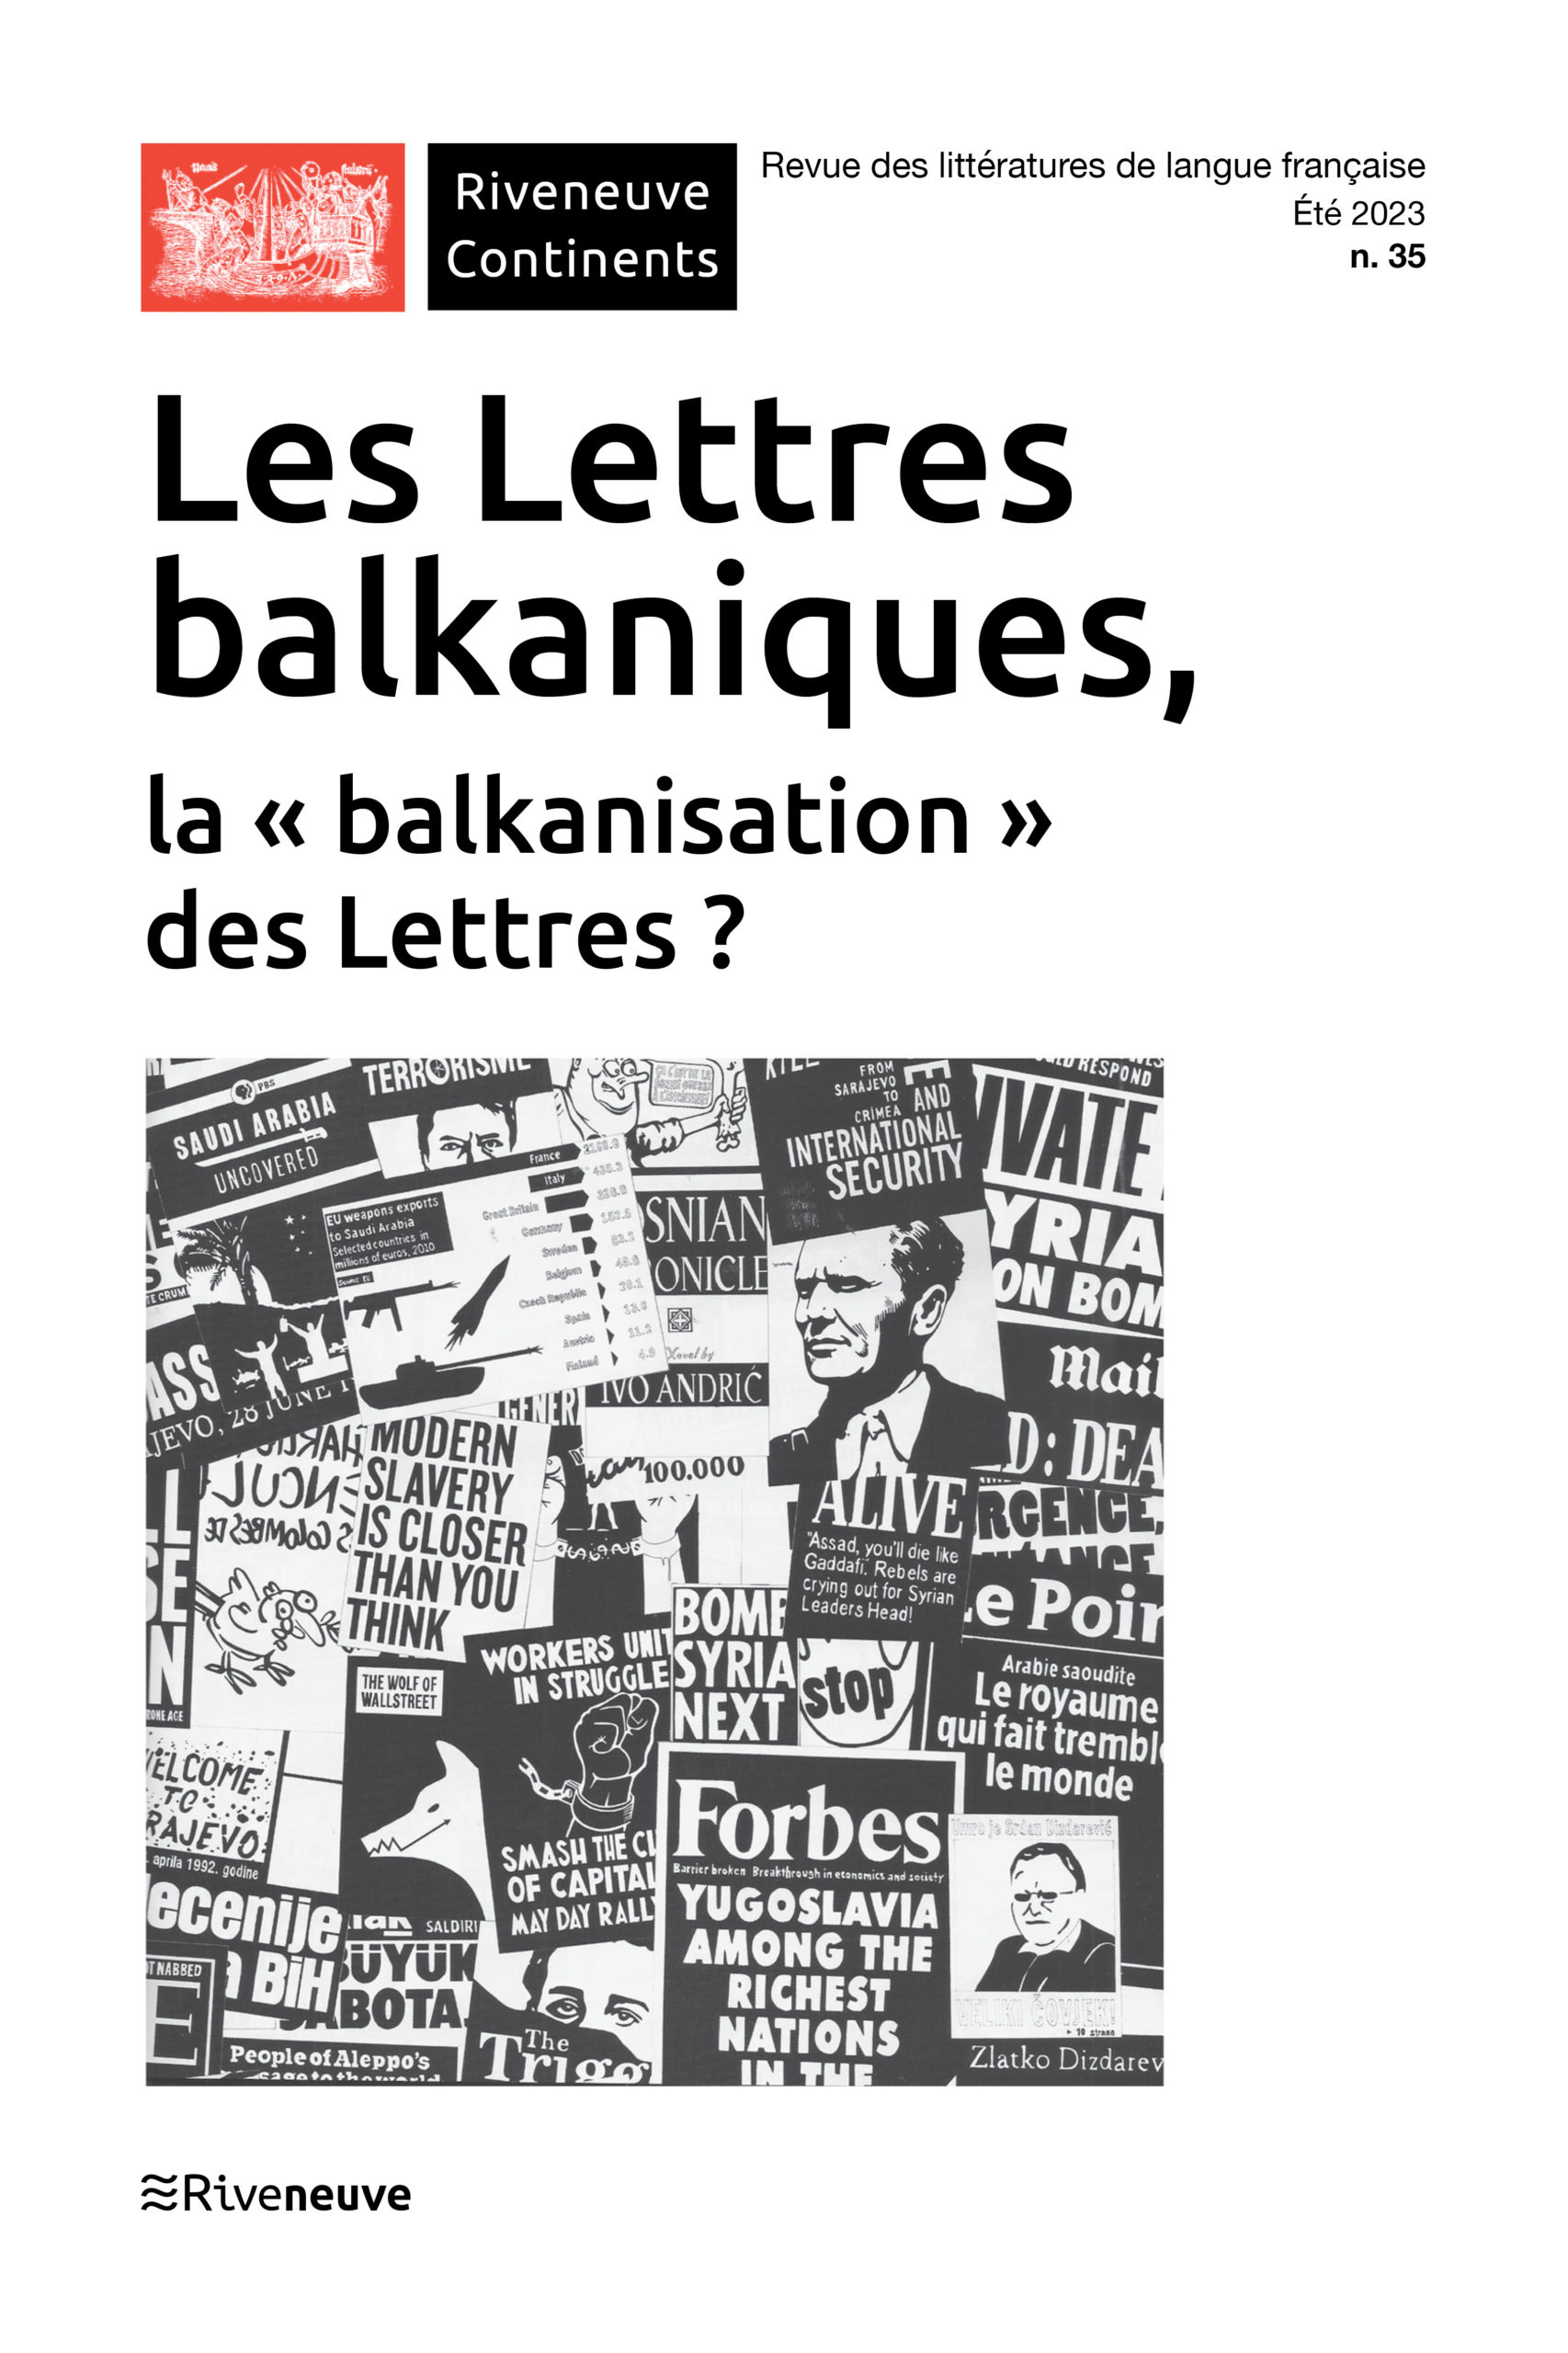 Les Lettres balkaniques, la “balkanisation” des Lettres ?